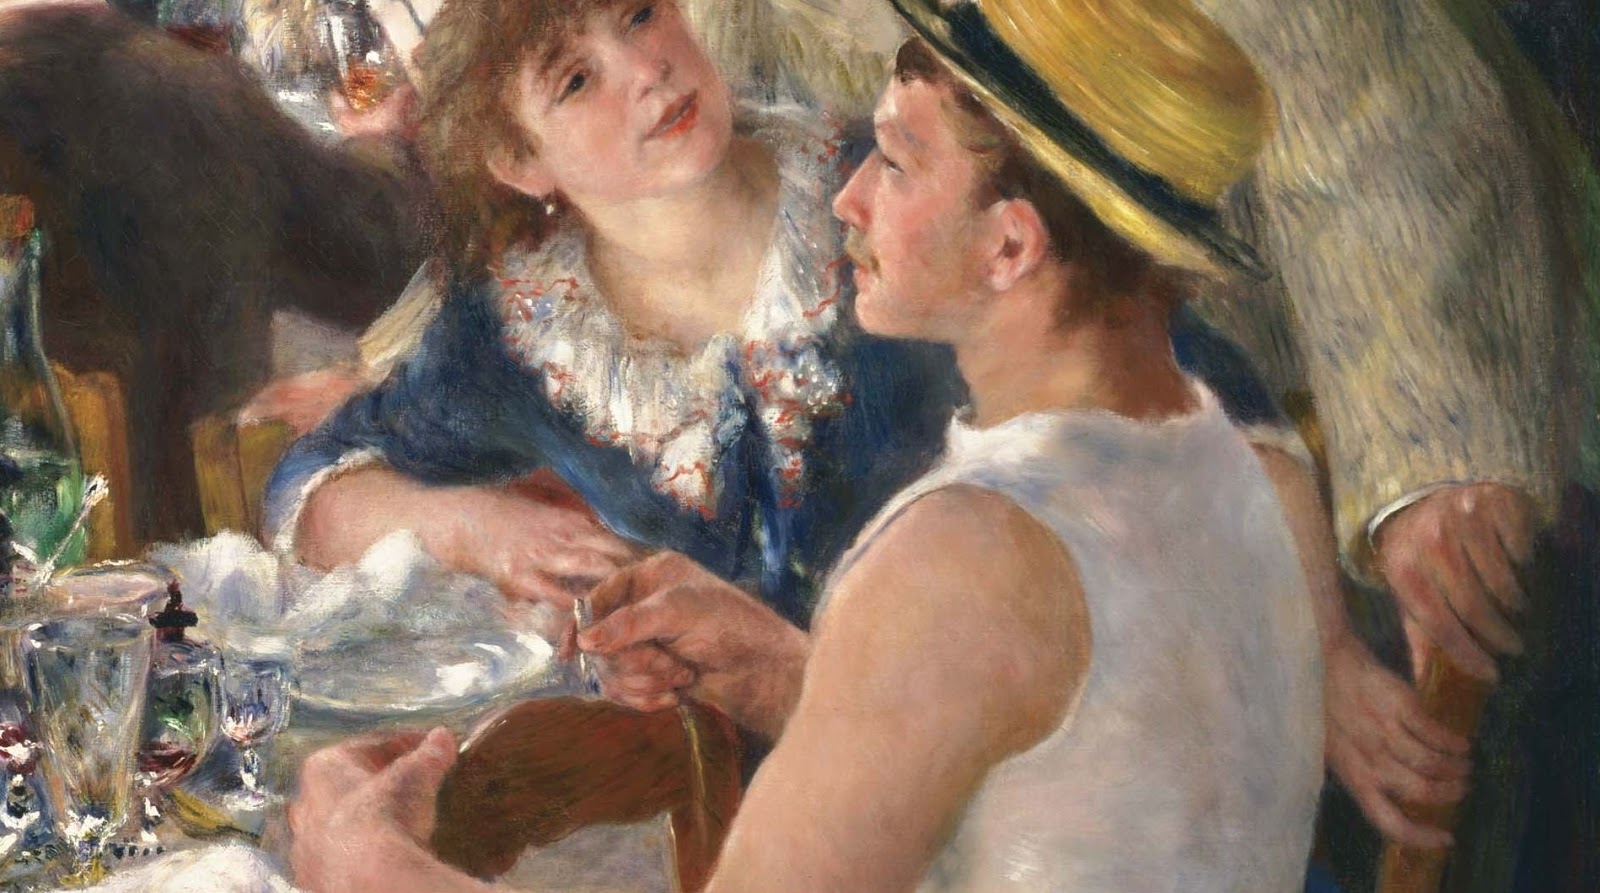 Pierre+Auguste+Renoir-1841-1-19 (580).JPG